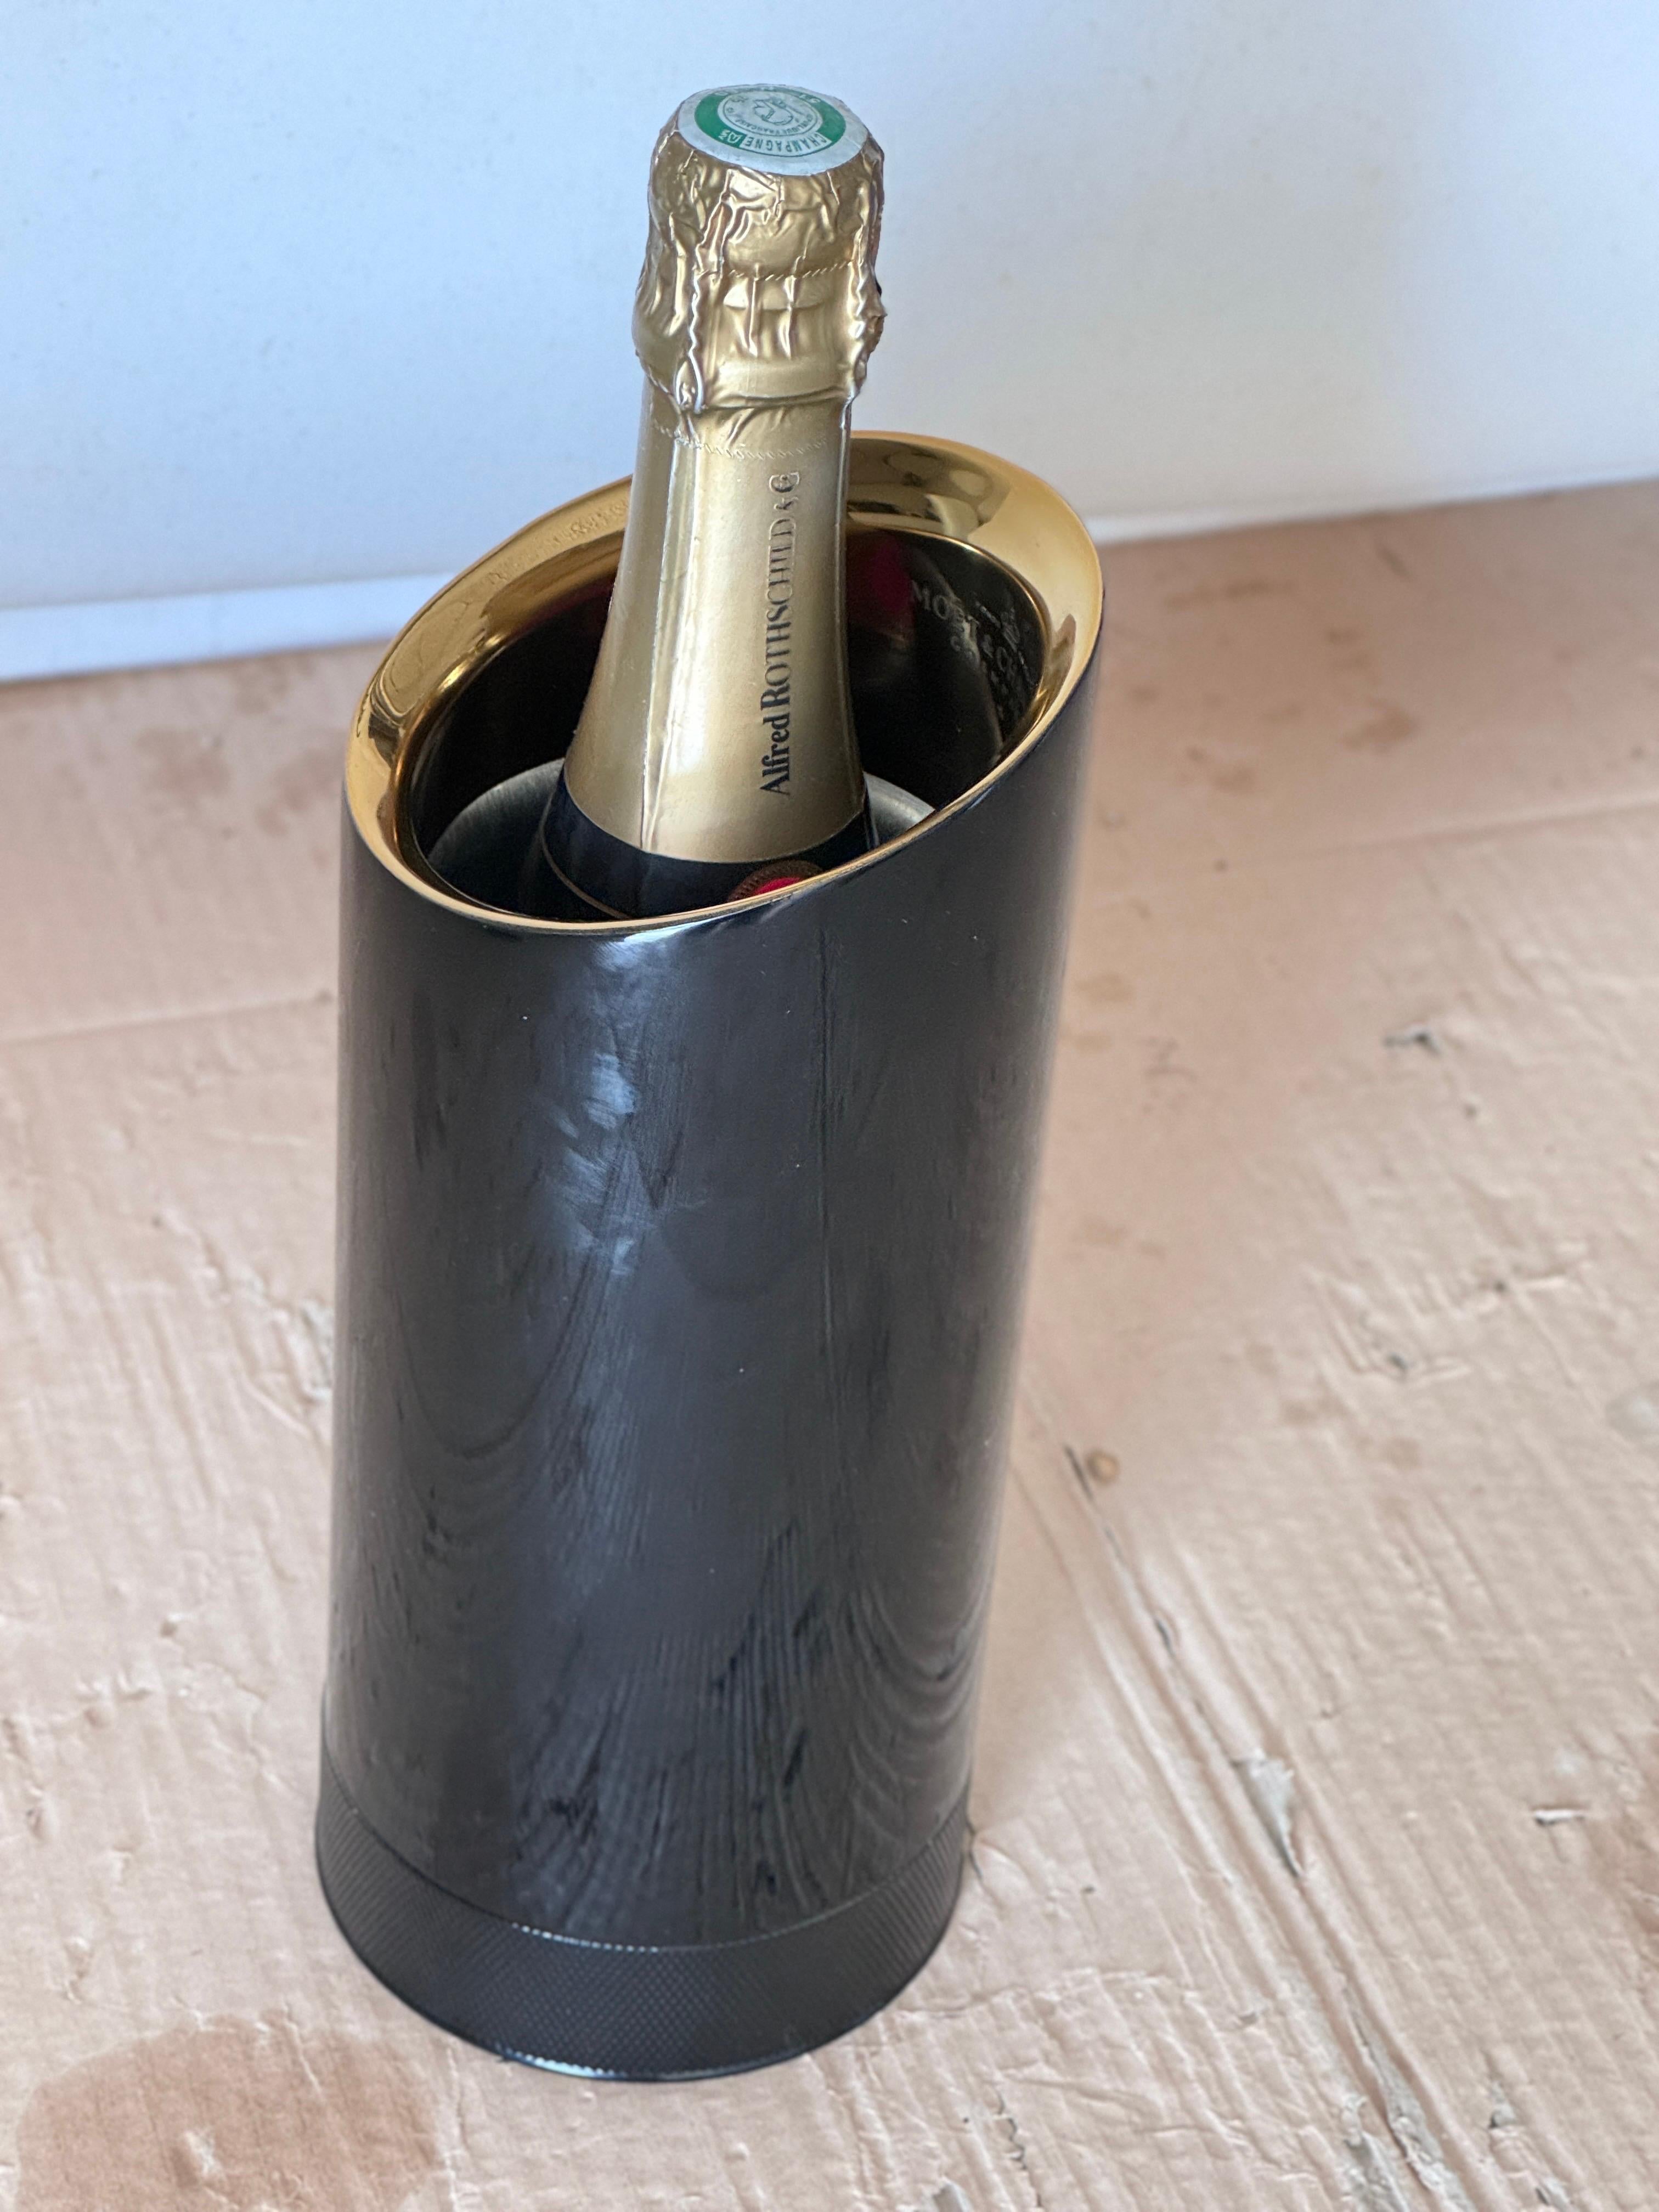 Moet & Chandon Champagnerkühler aus Metall in schwarzer und weißer Farbe von Jean Marc Gady.

Das Objekt ist ein Metallzylinder, der sich aufschrauben lässt und in dem sich ein weiterer Aluminiumzylinder befindet, der bei einer negativen Temperatur